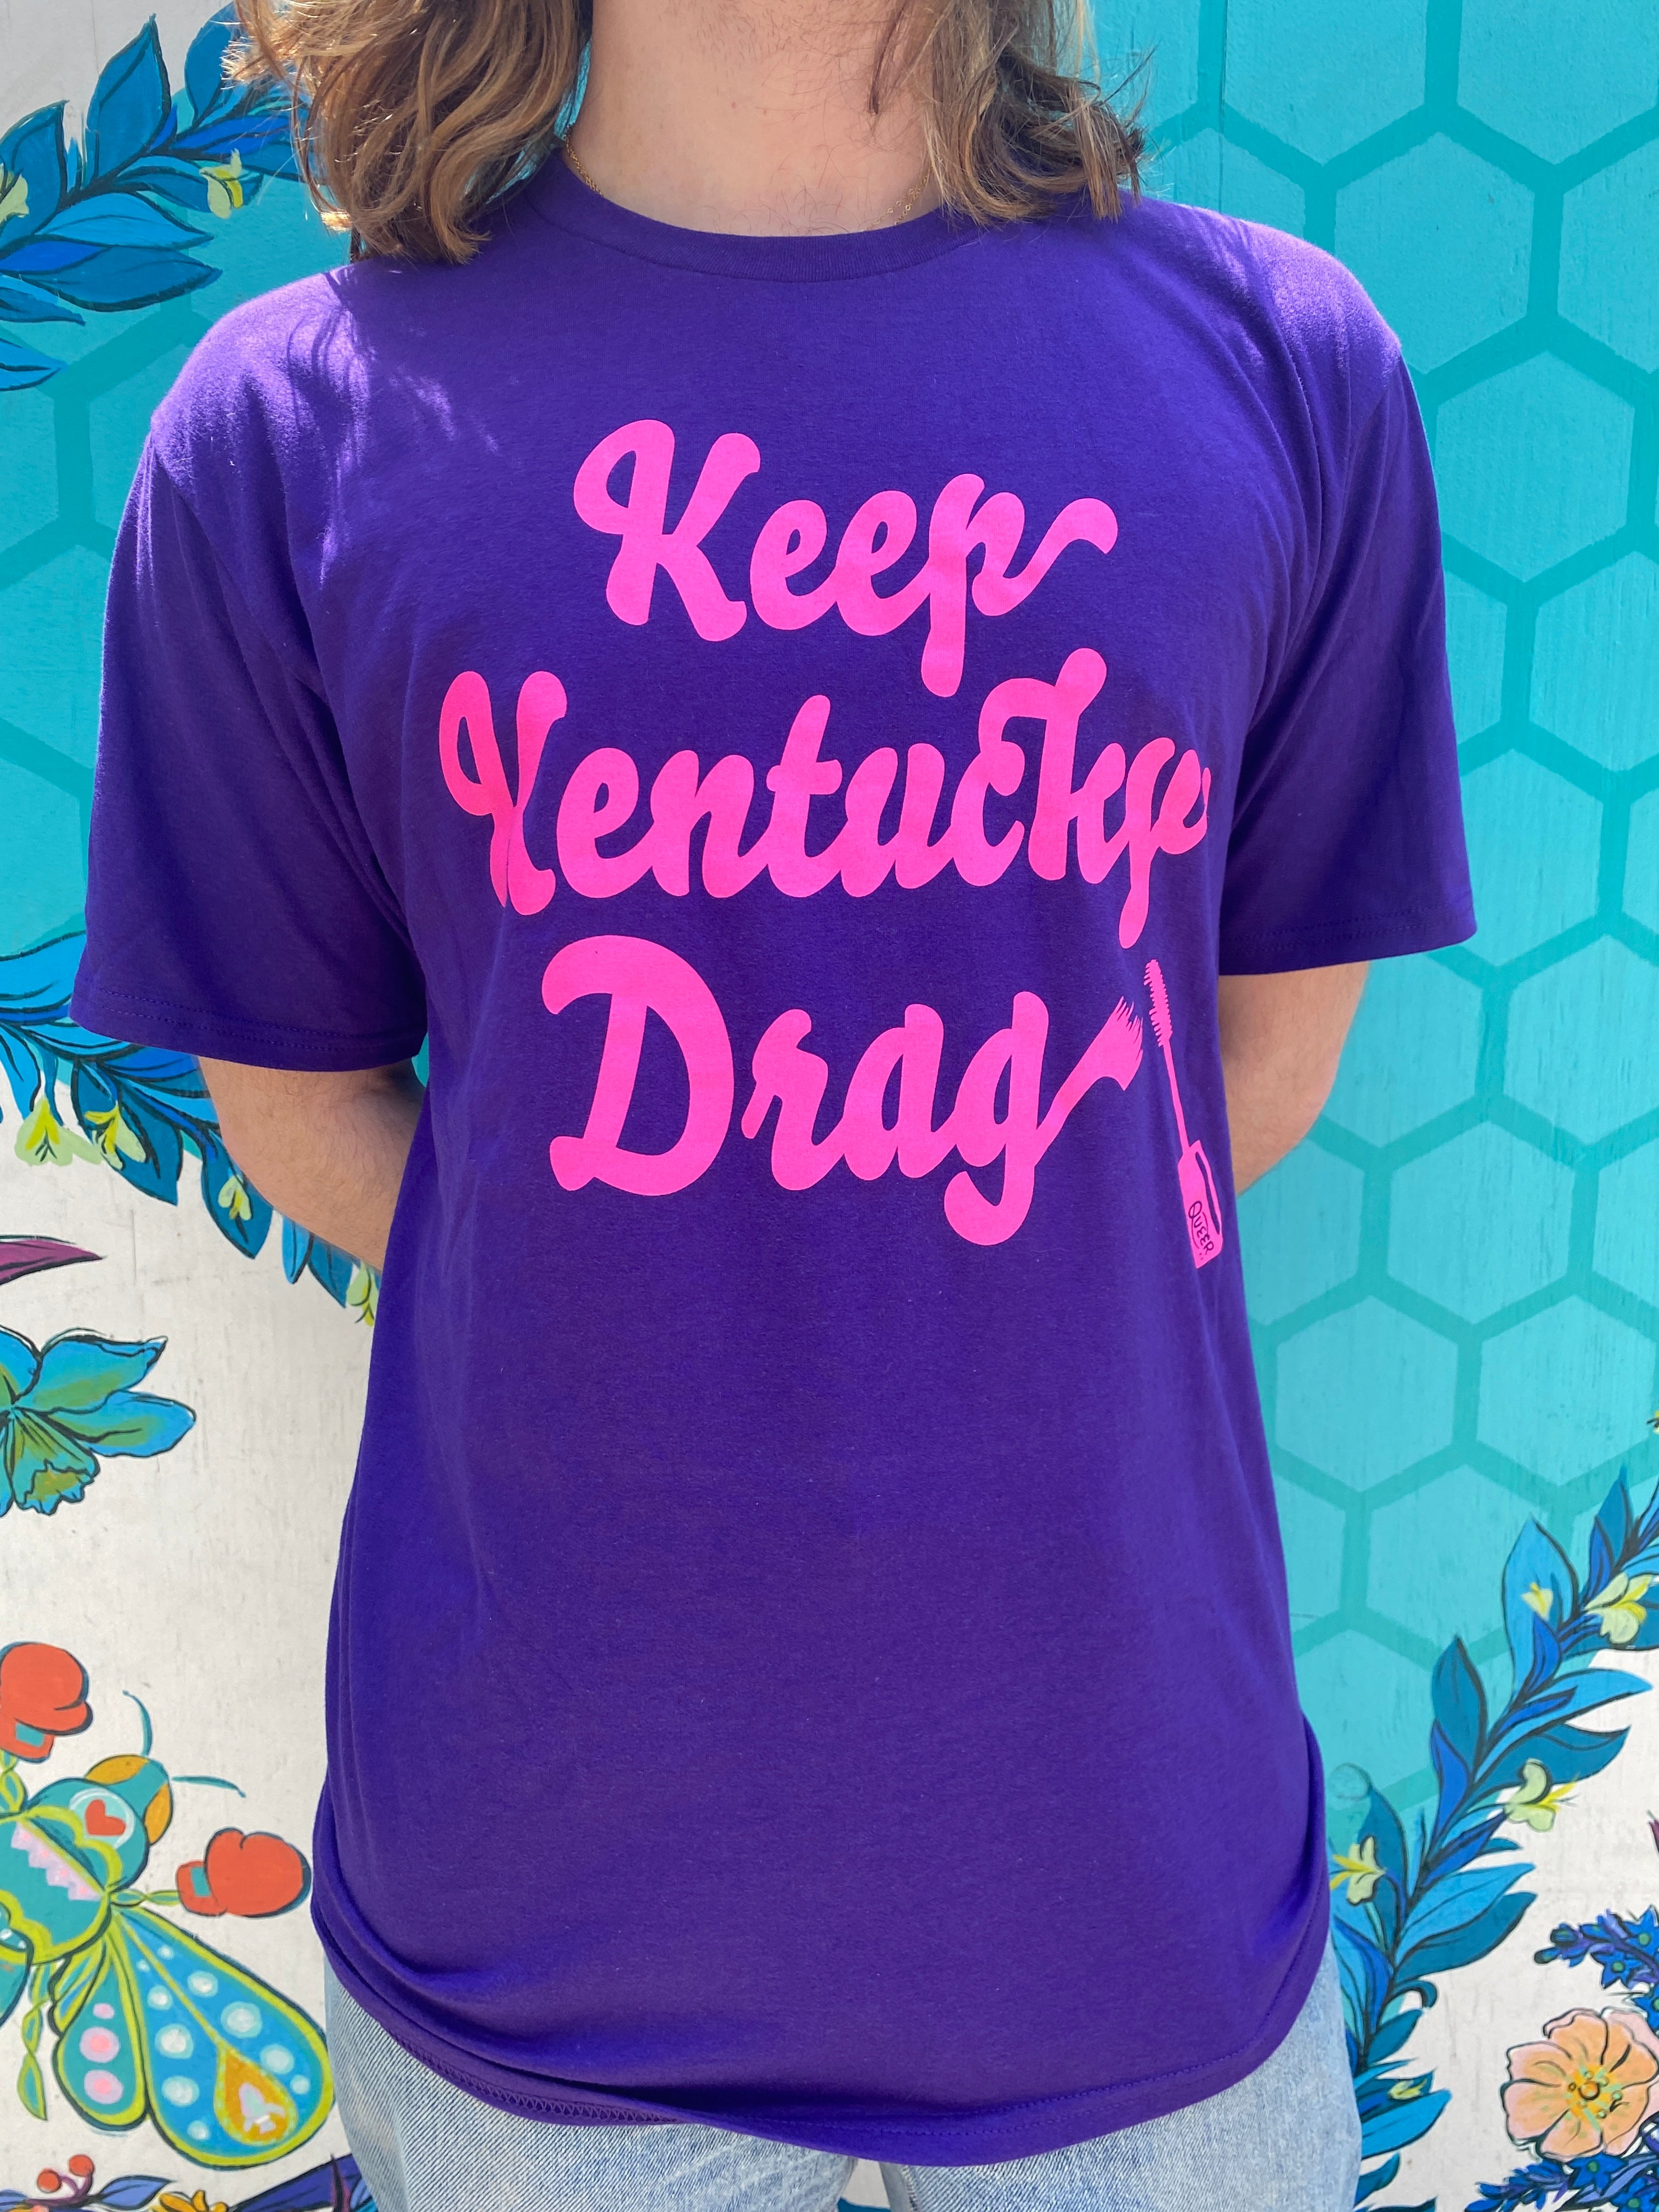 Louisville Kentucky | Kids T-Shirt